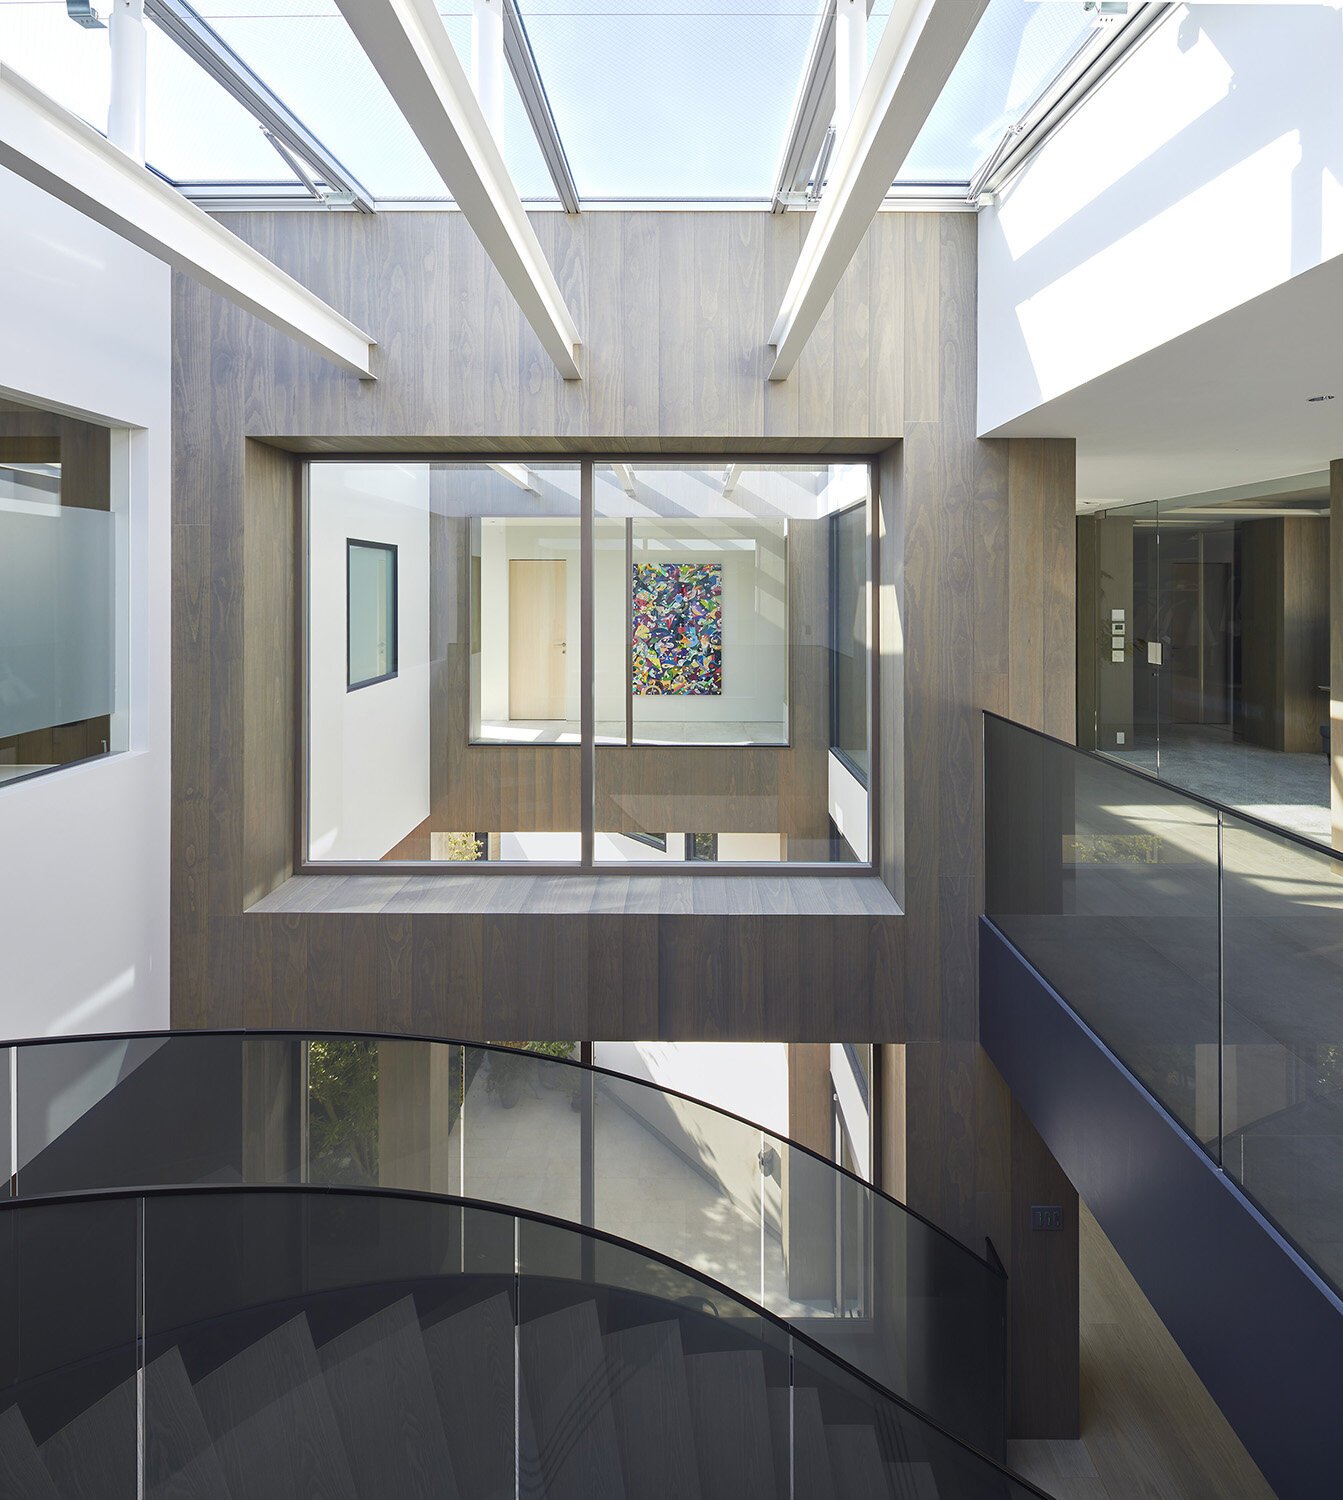  建築家 sinatoシナトの大野力が設計した住宅Shoto S。3階のインテリアデザイン 